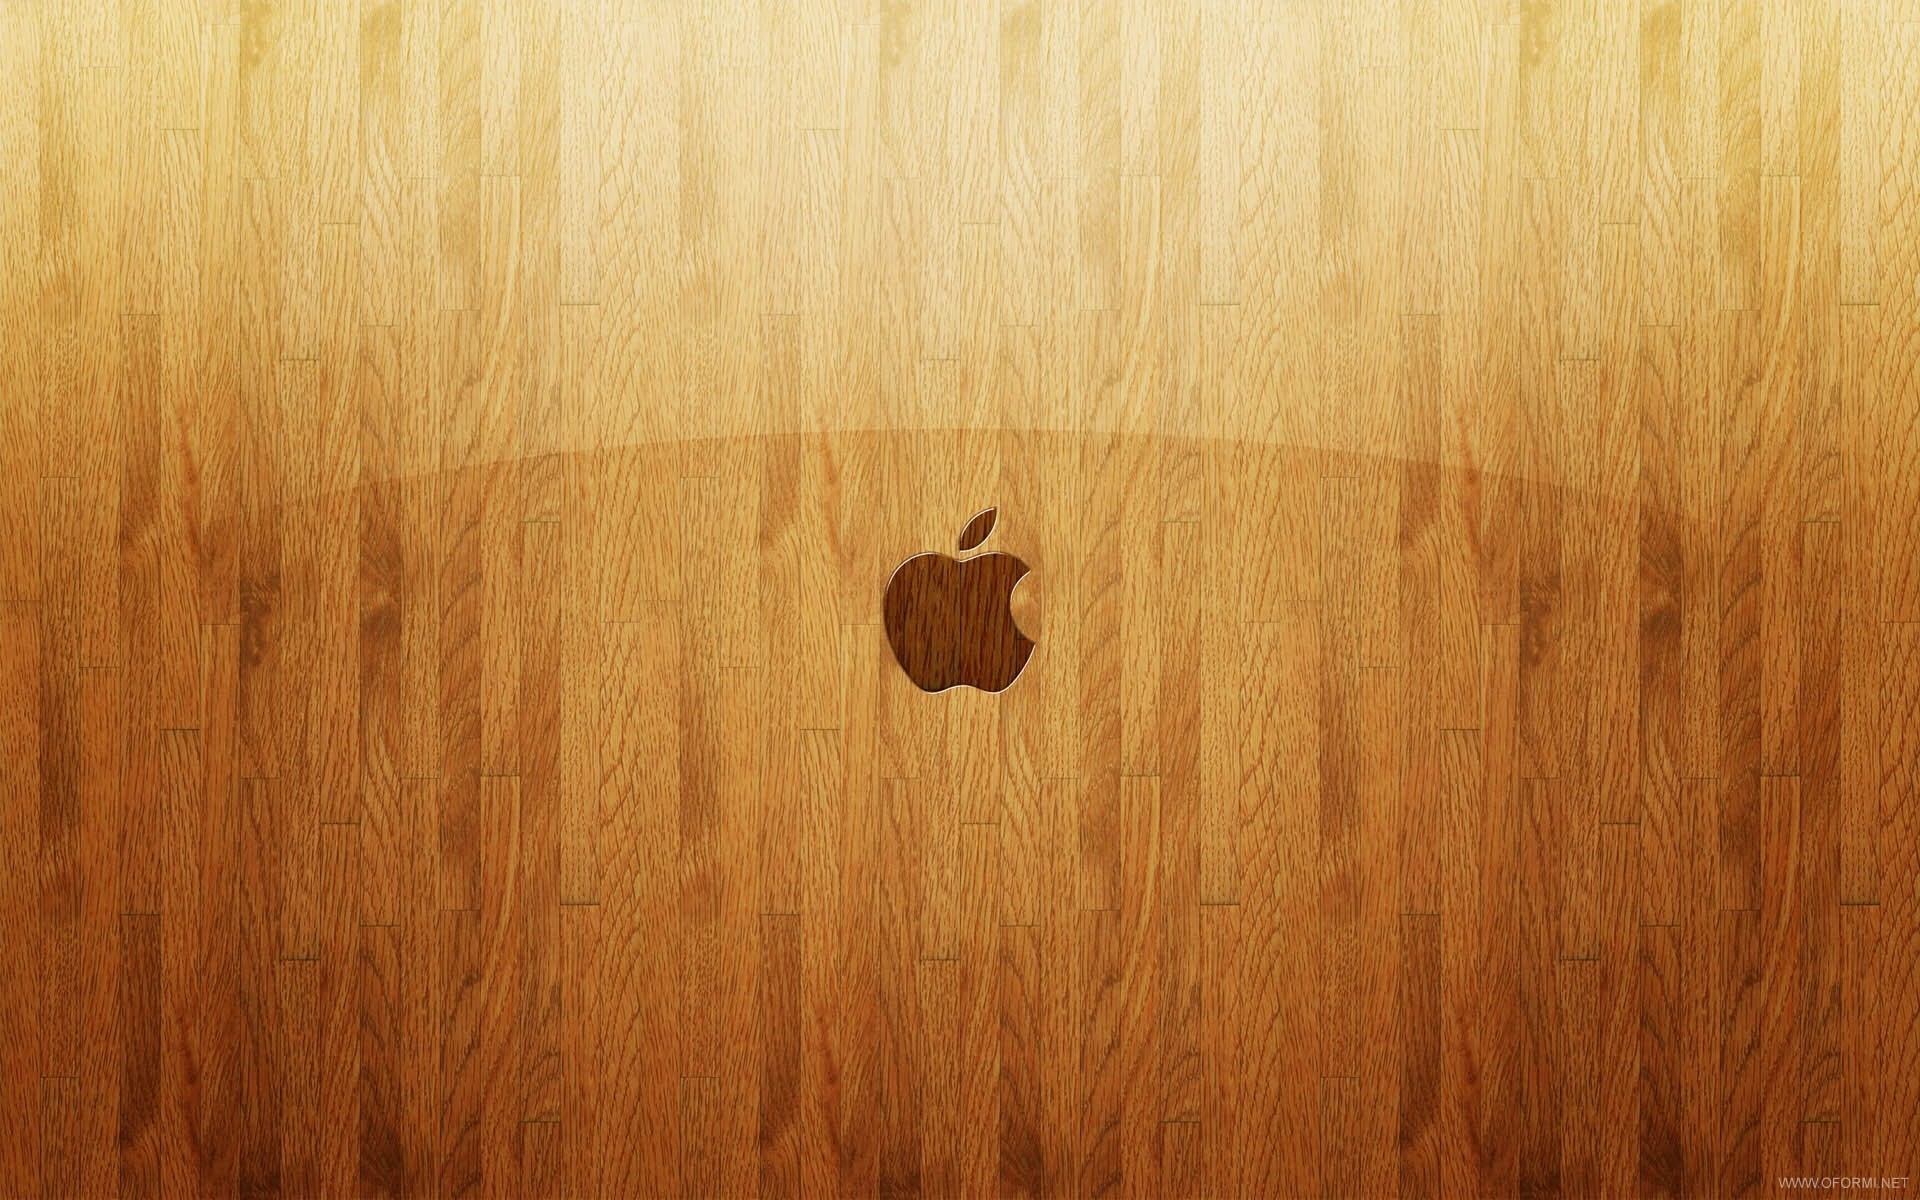 Handy-Wallpaper Apple-, Marken, Hintergrund, Logos kostenlos herunterladen.